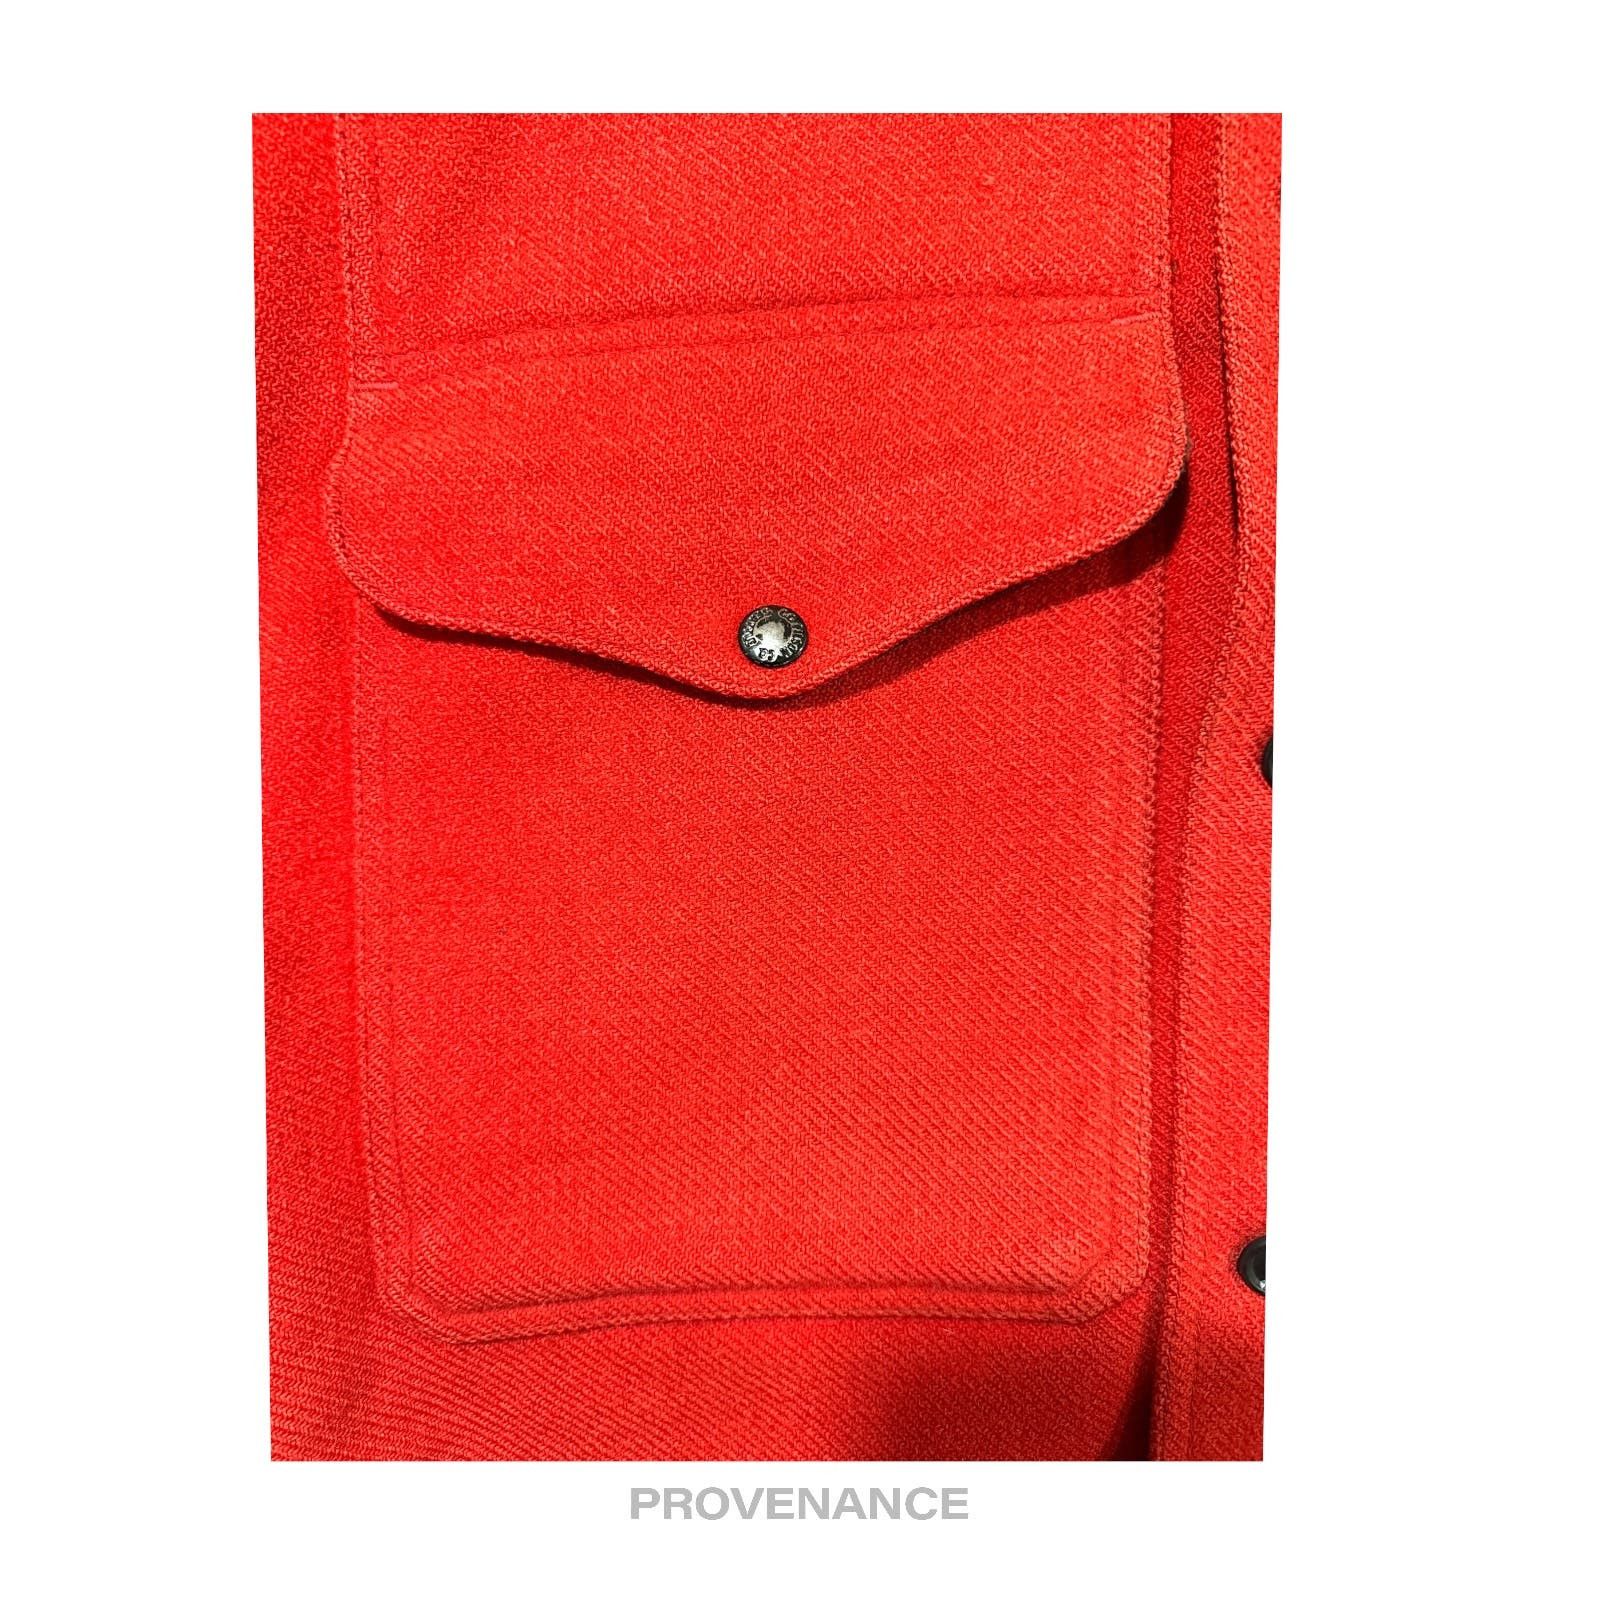 Filson 🔴 Filson Mackinaw Wool Cruiser Jacket - Scarlet Red 42 M Size US M / EU 48-50 / 2 - 9 Thumbnail